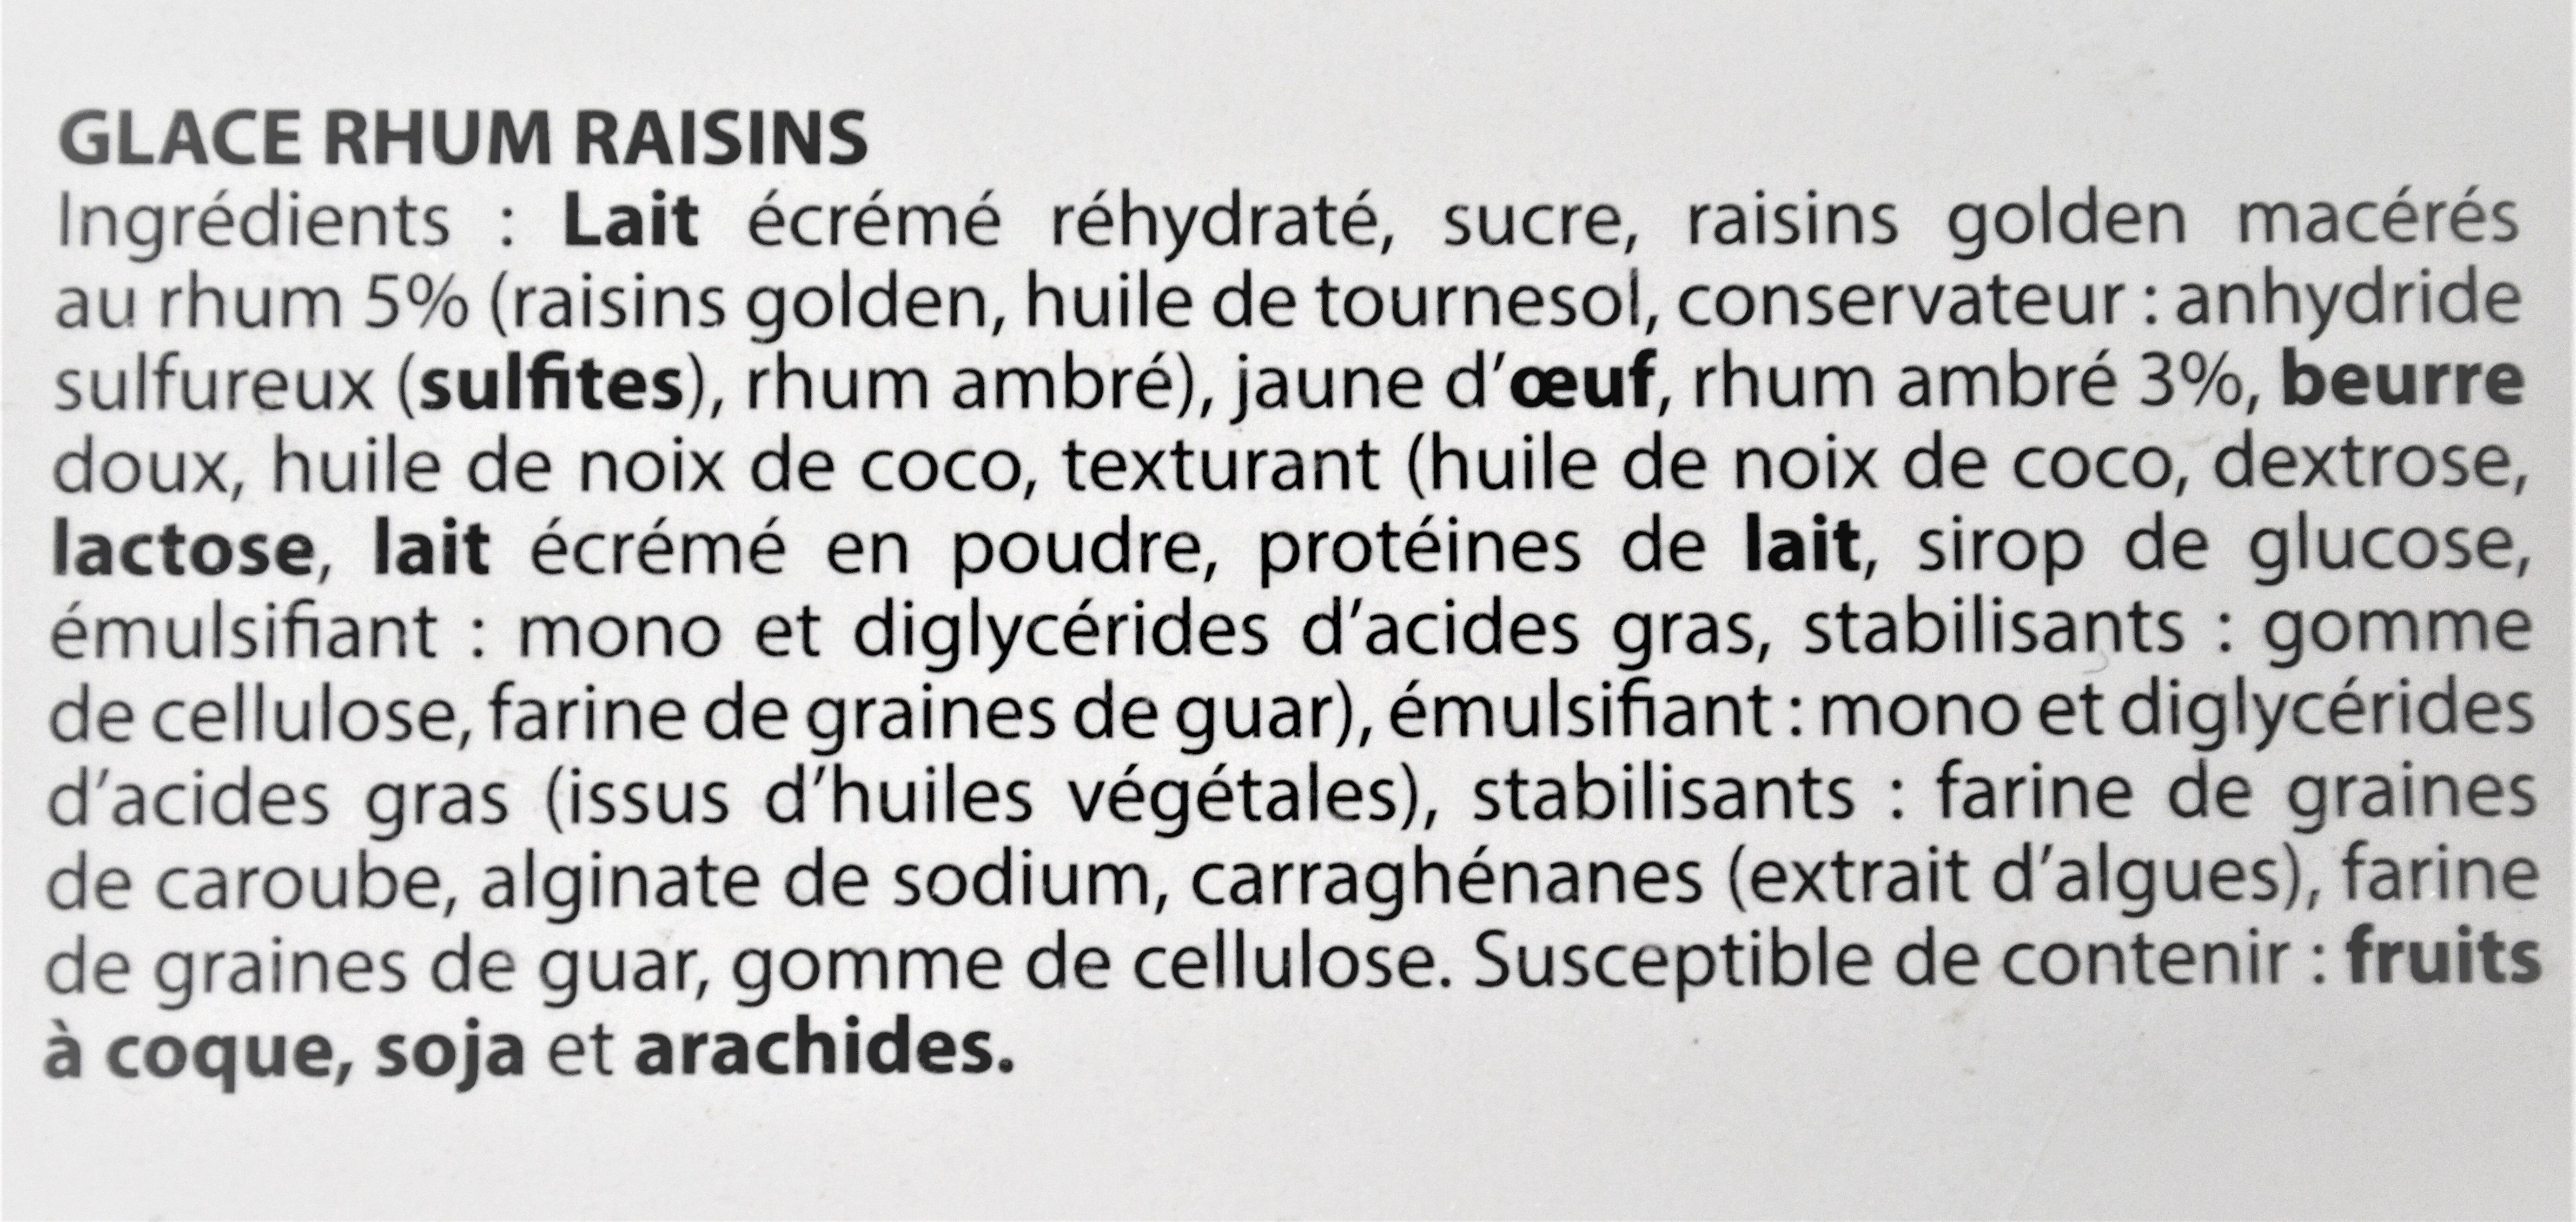 Glace RHUM RAISINS, raisins gloden macérés - Ingredients - fr